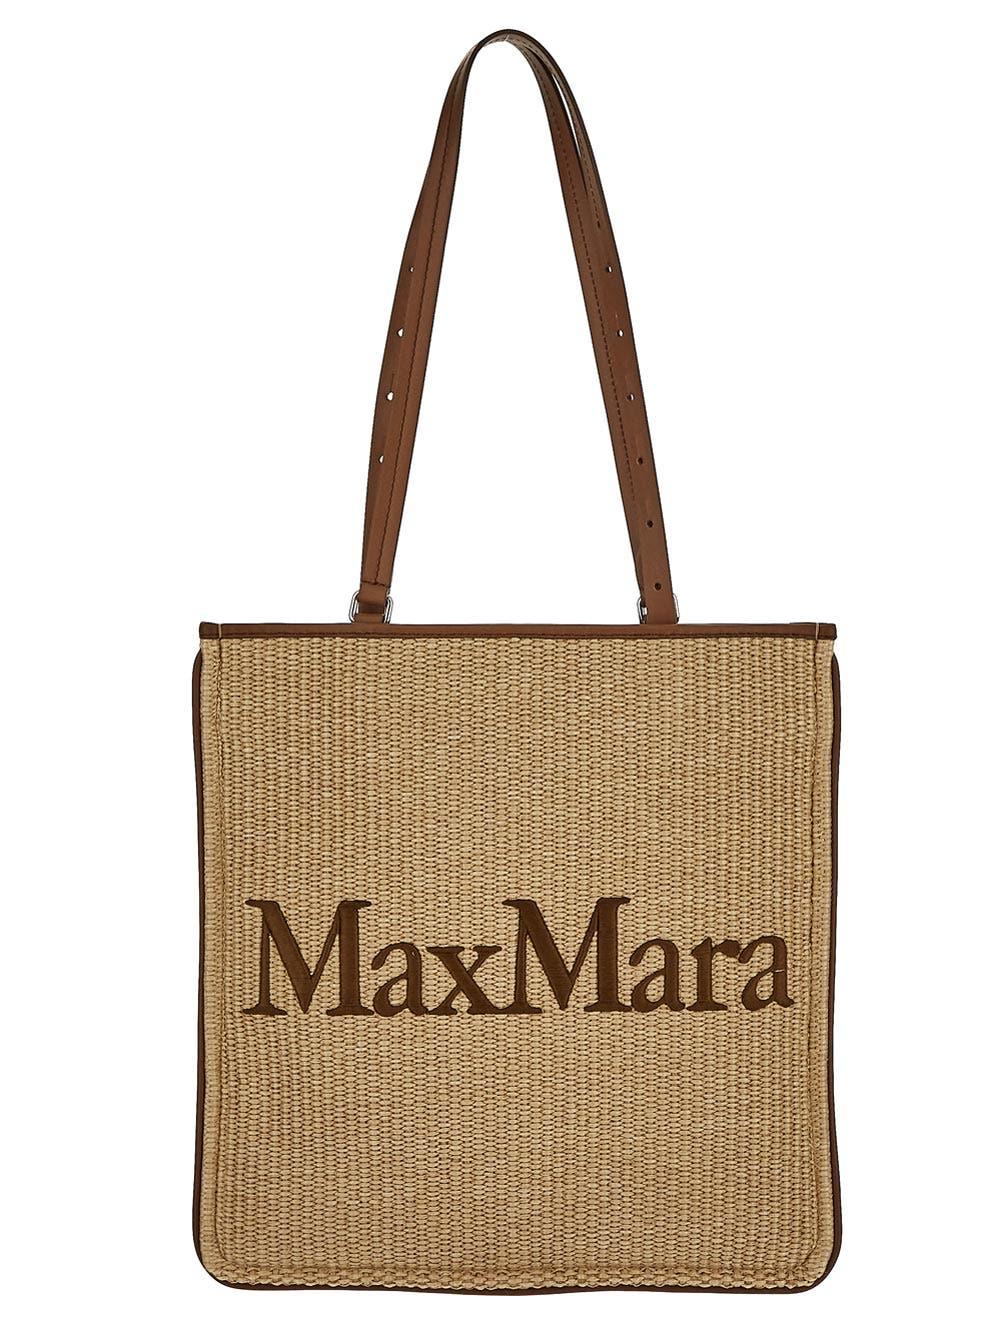 Max Mara Logo Tote Bag in Natural | Lyst